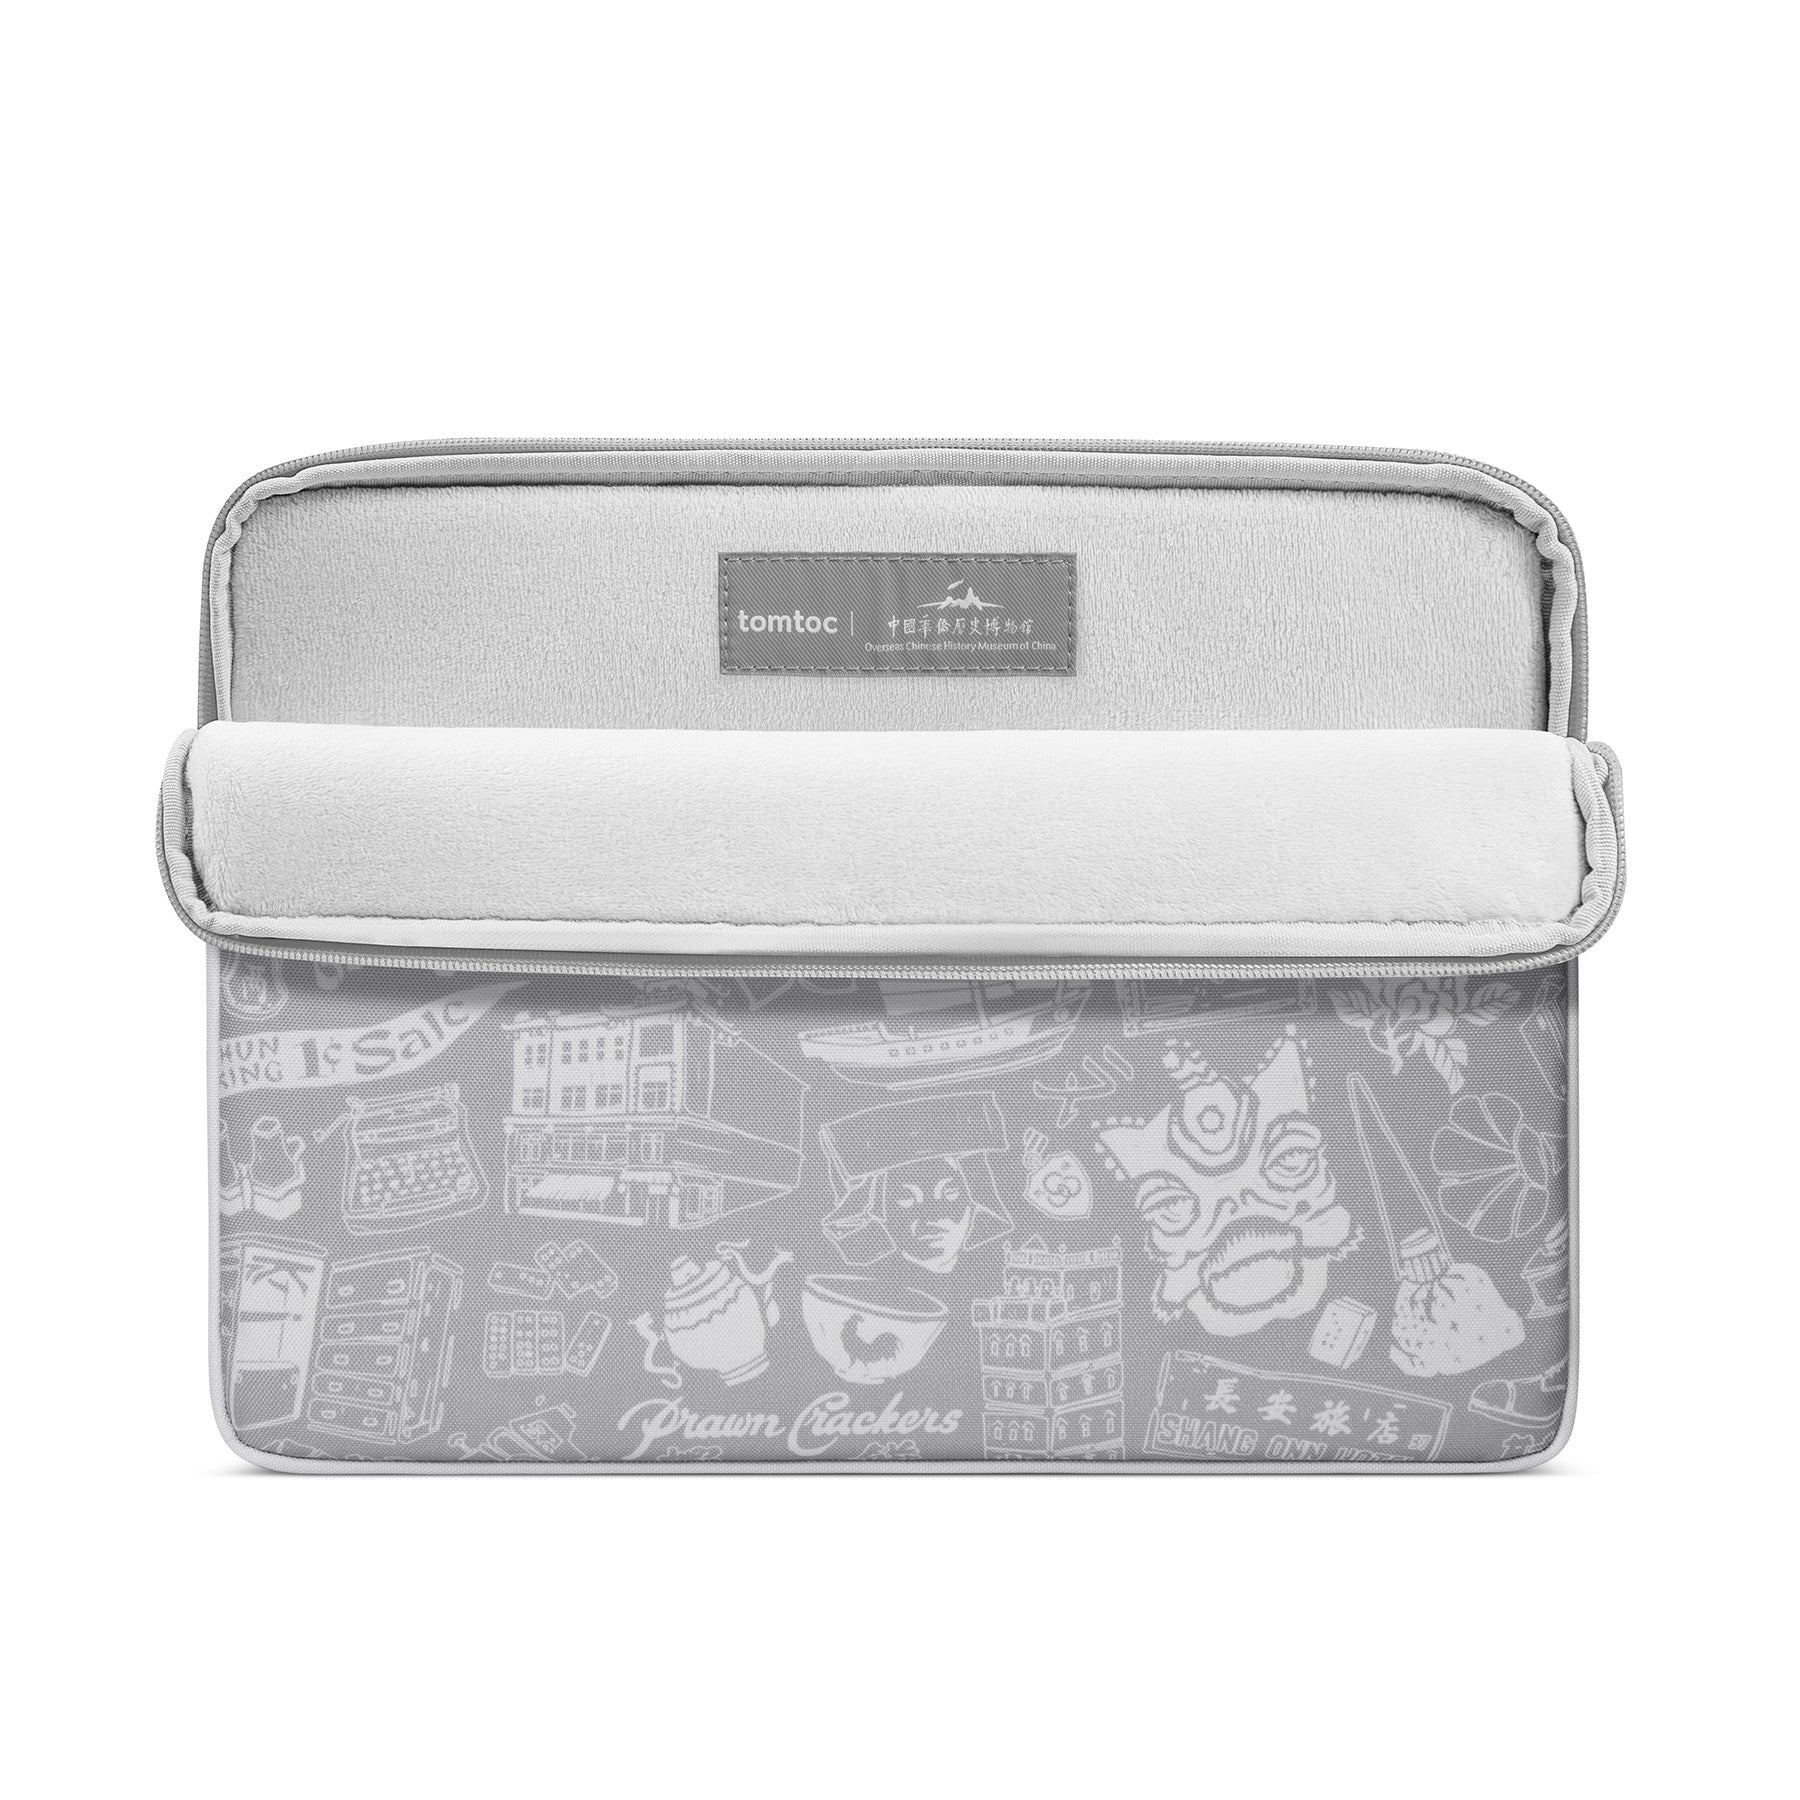 OCHM A18 Laptop Sleeve (Macbook) 13" - Gray